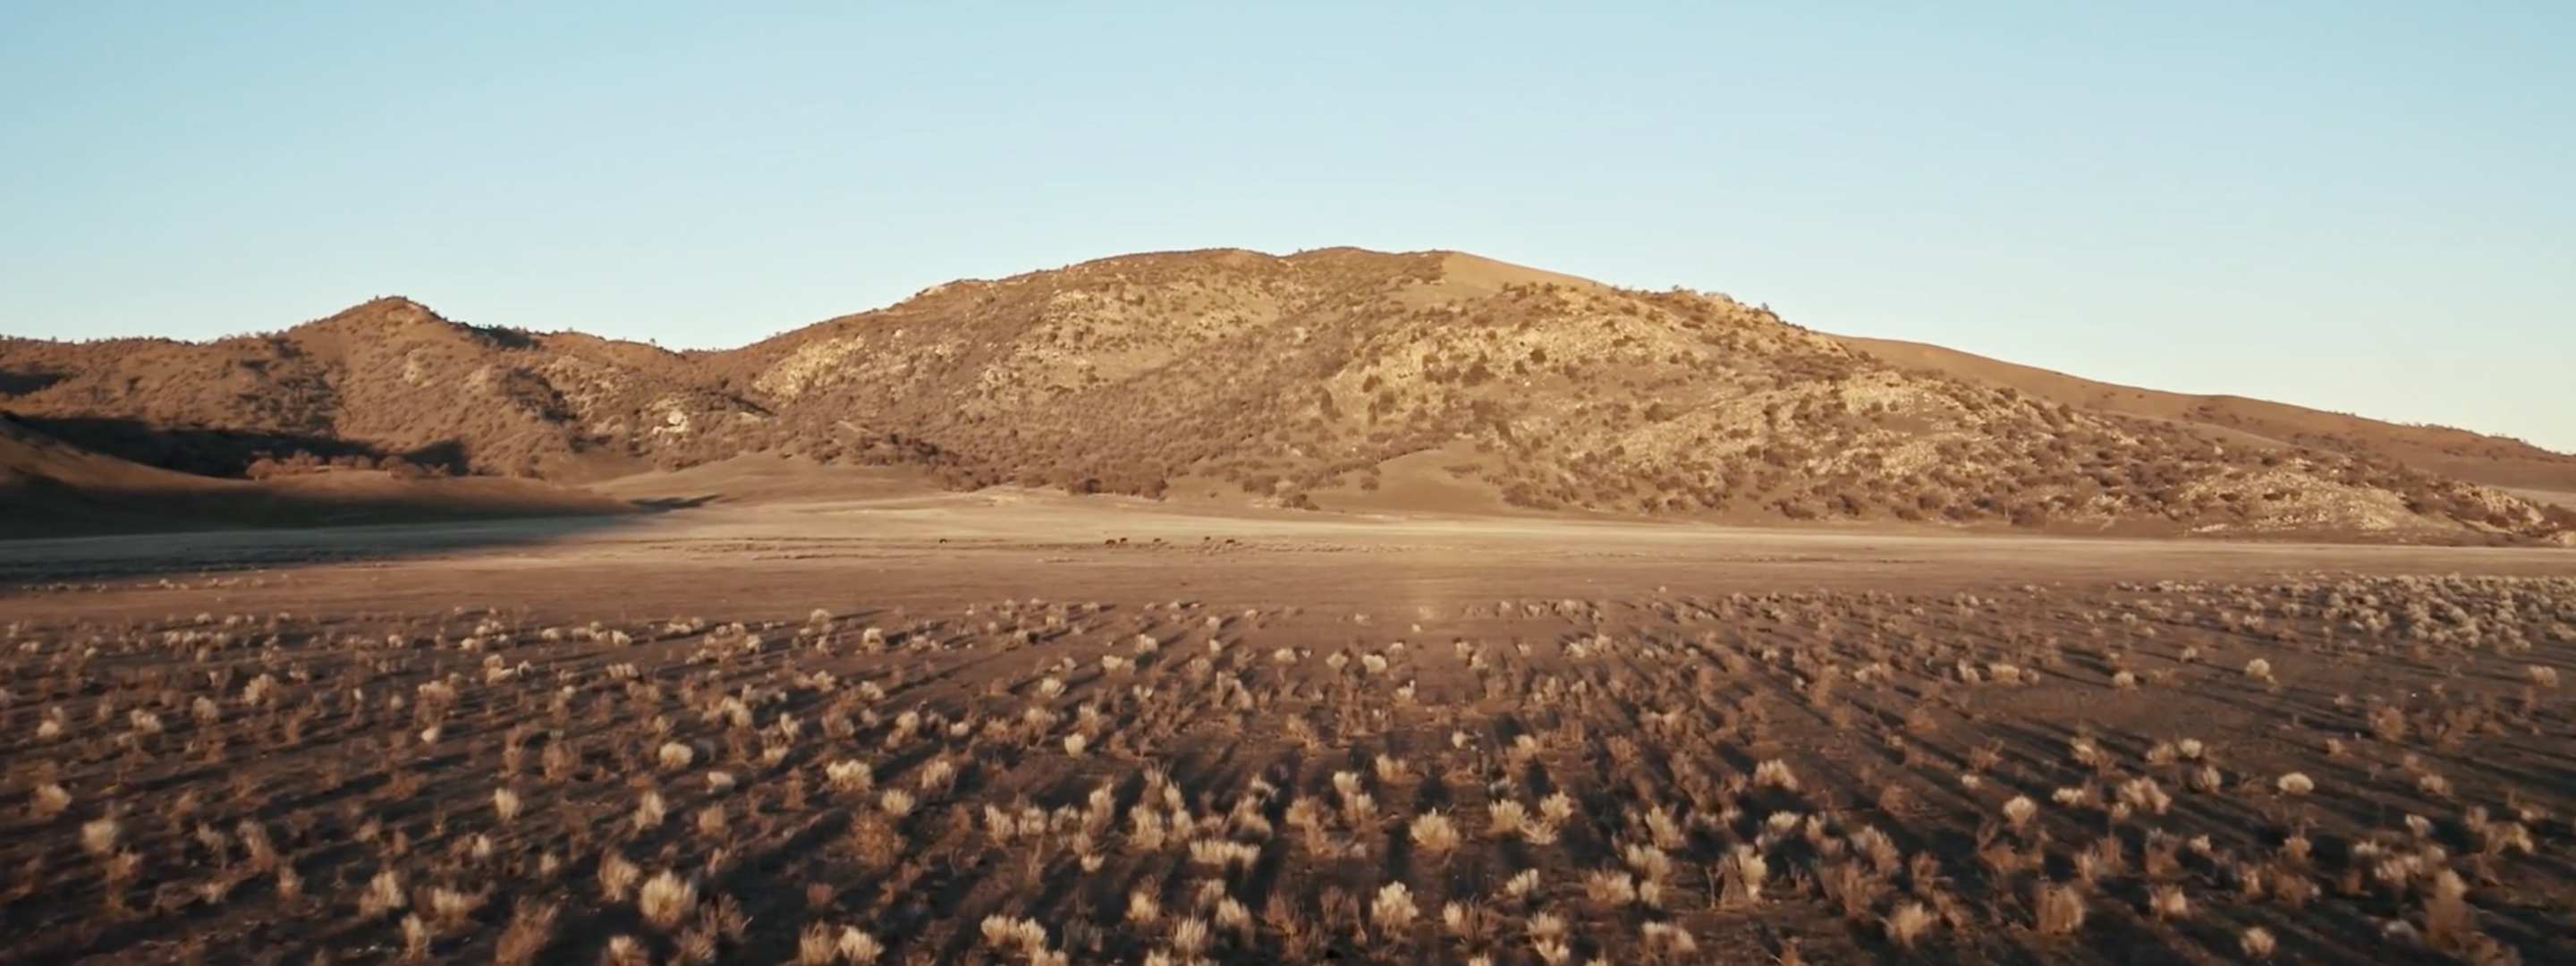 <a href="https://www.capgemini.com/news/inside-stories/mojave-desert/"></a><a href="https://www.capgemini.com/fi-en/news/inside-stories/mojave-desert/">The Mojave Desert: Data for tortoises and tires</a>